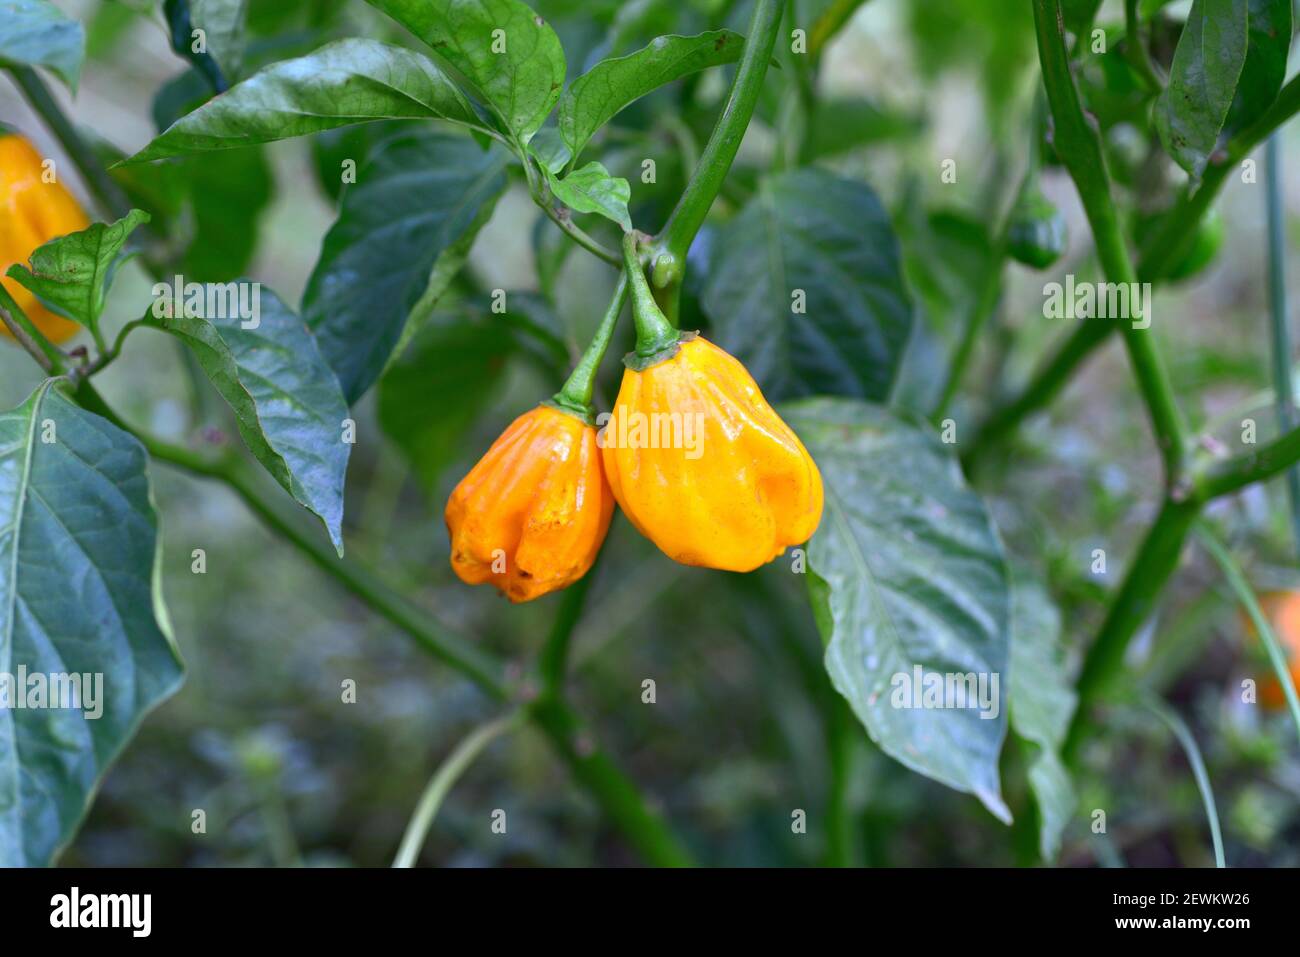 La pimienta tipo habanero (Capsicum chinensis) es una planta anual nativa de las Islas del Caribe, Centroamérica y el sur de México. Sus frutos son comestibles Foto de stock